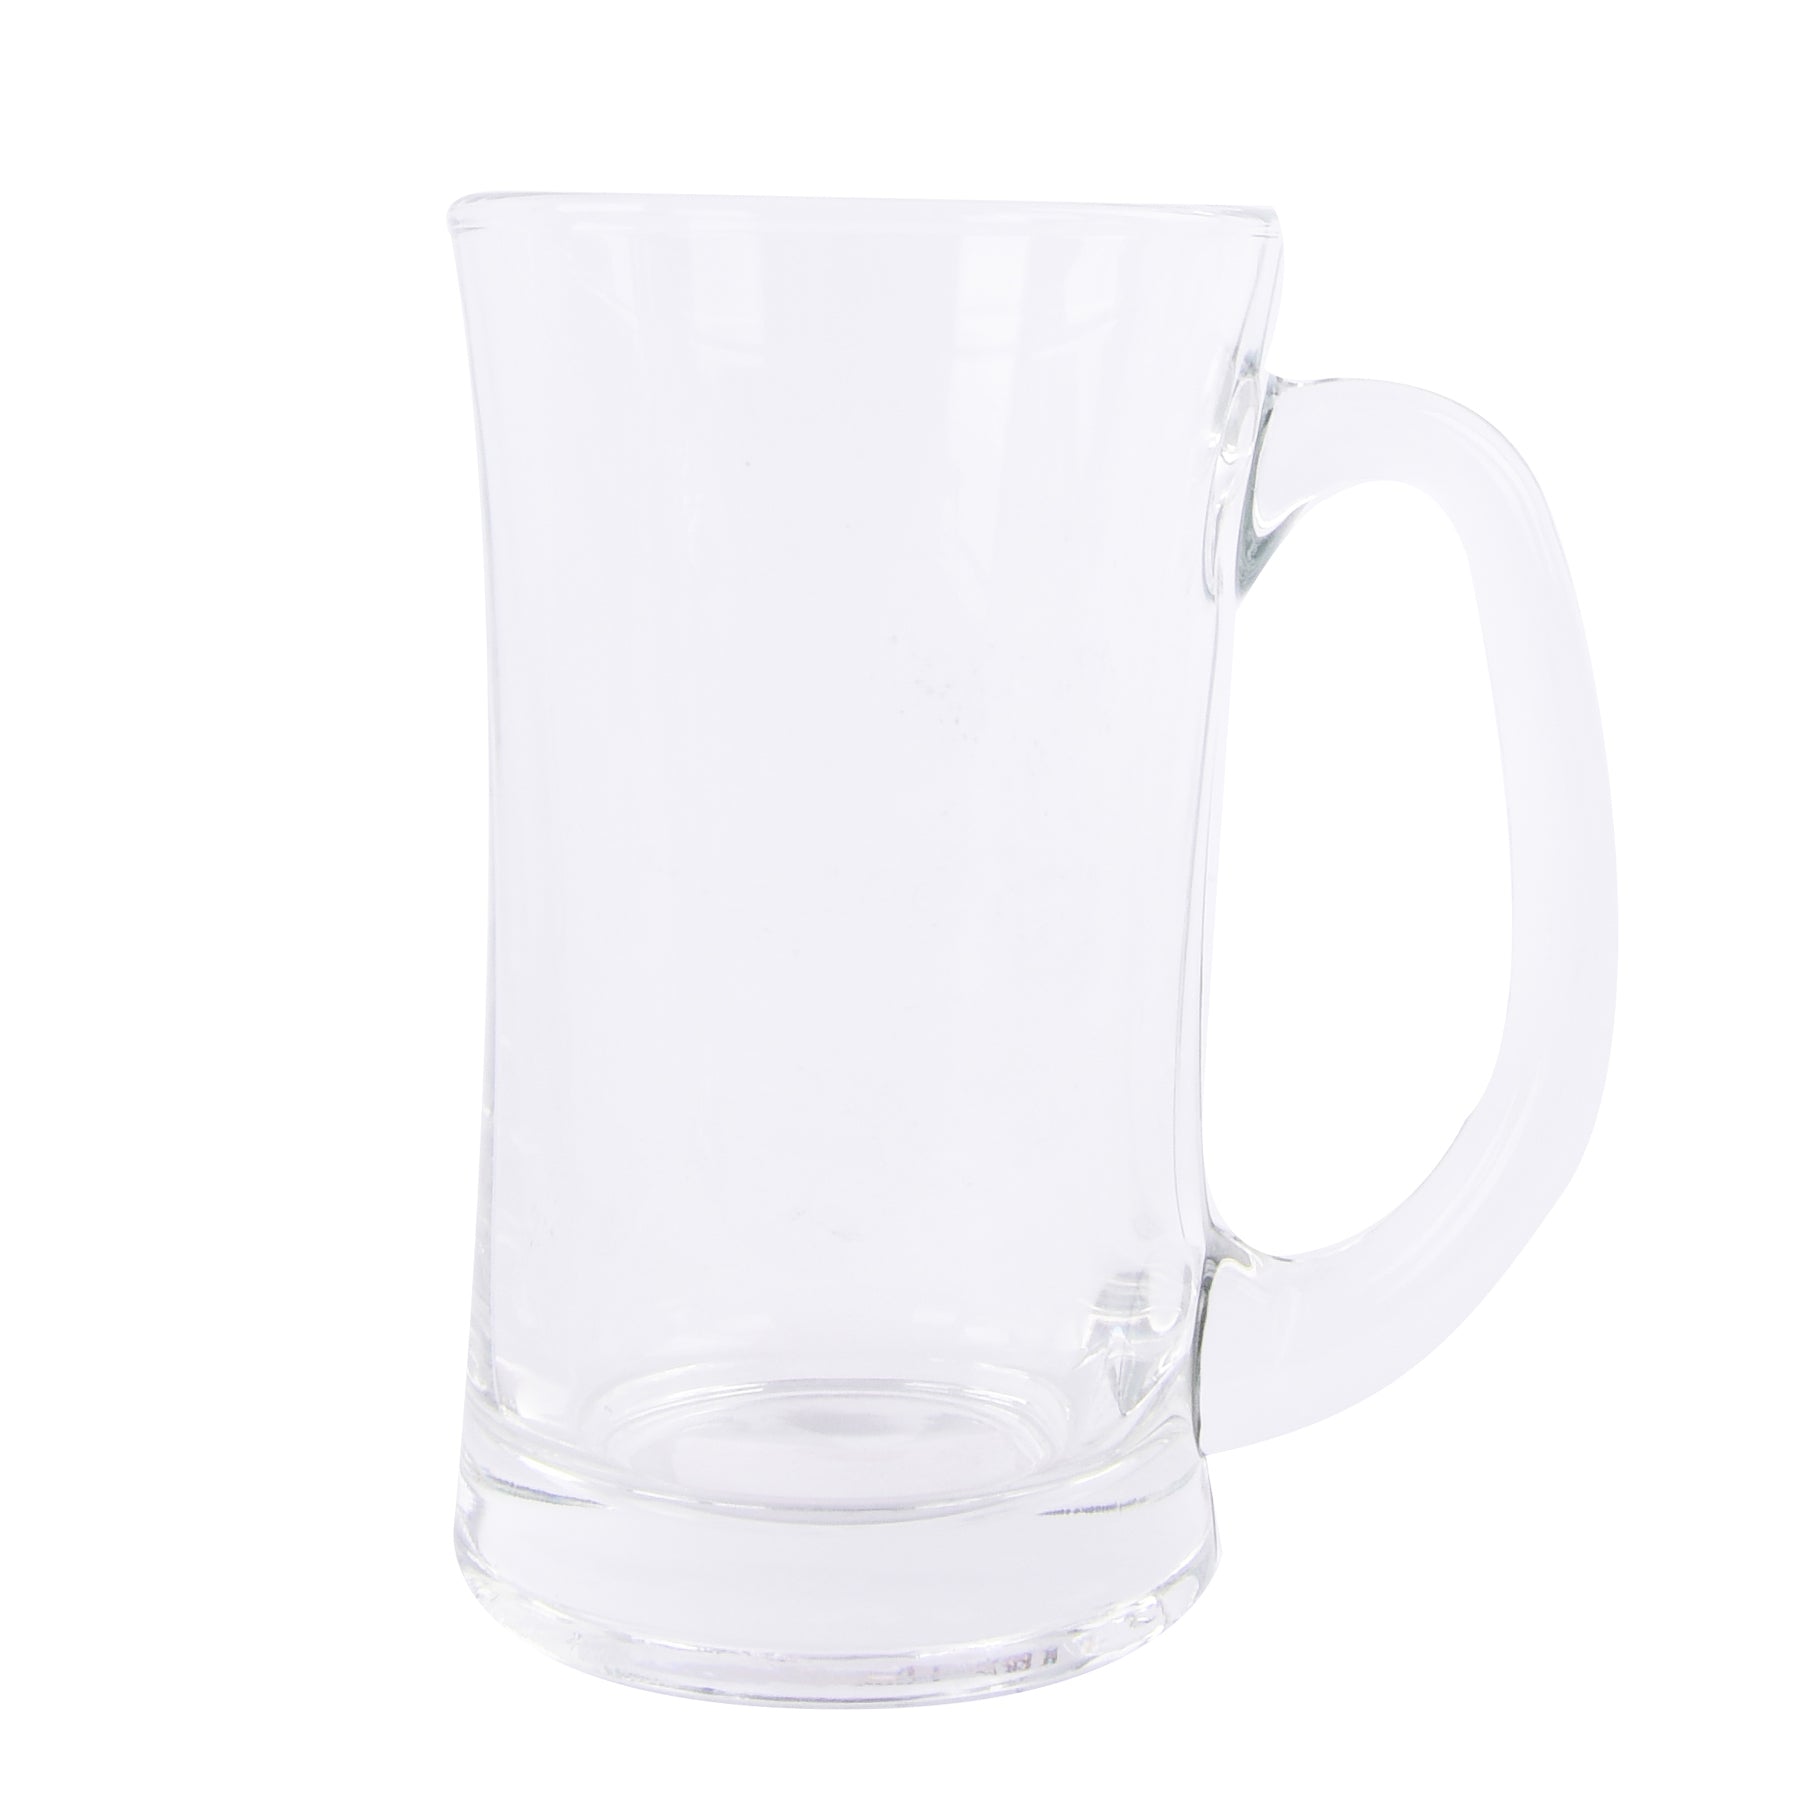 Glass mug with handle